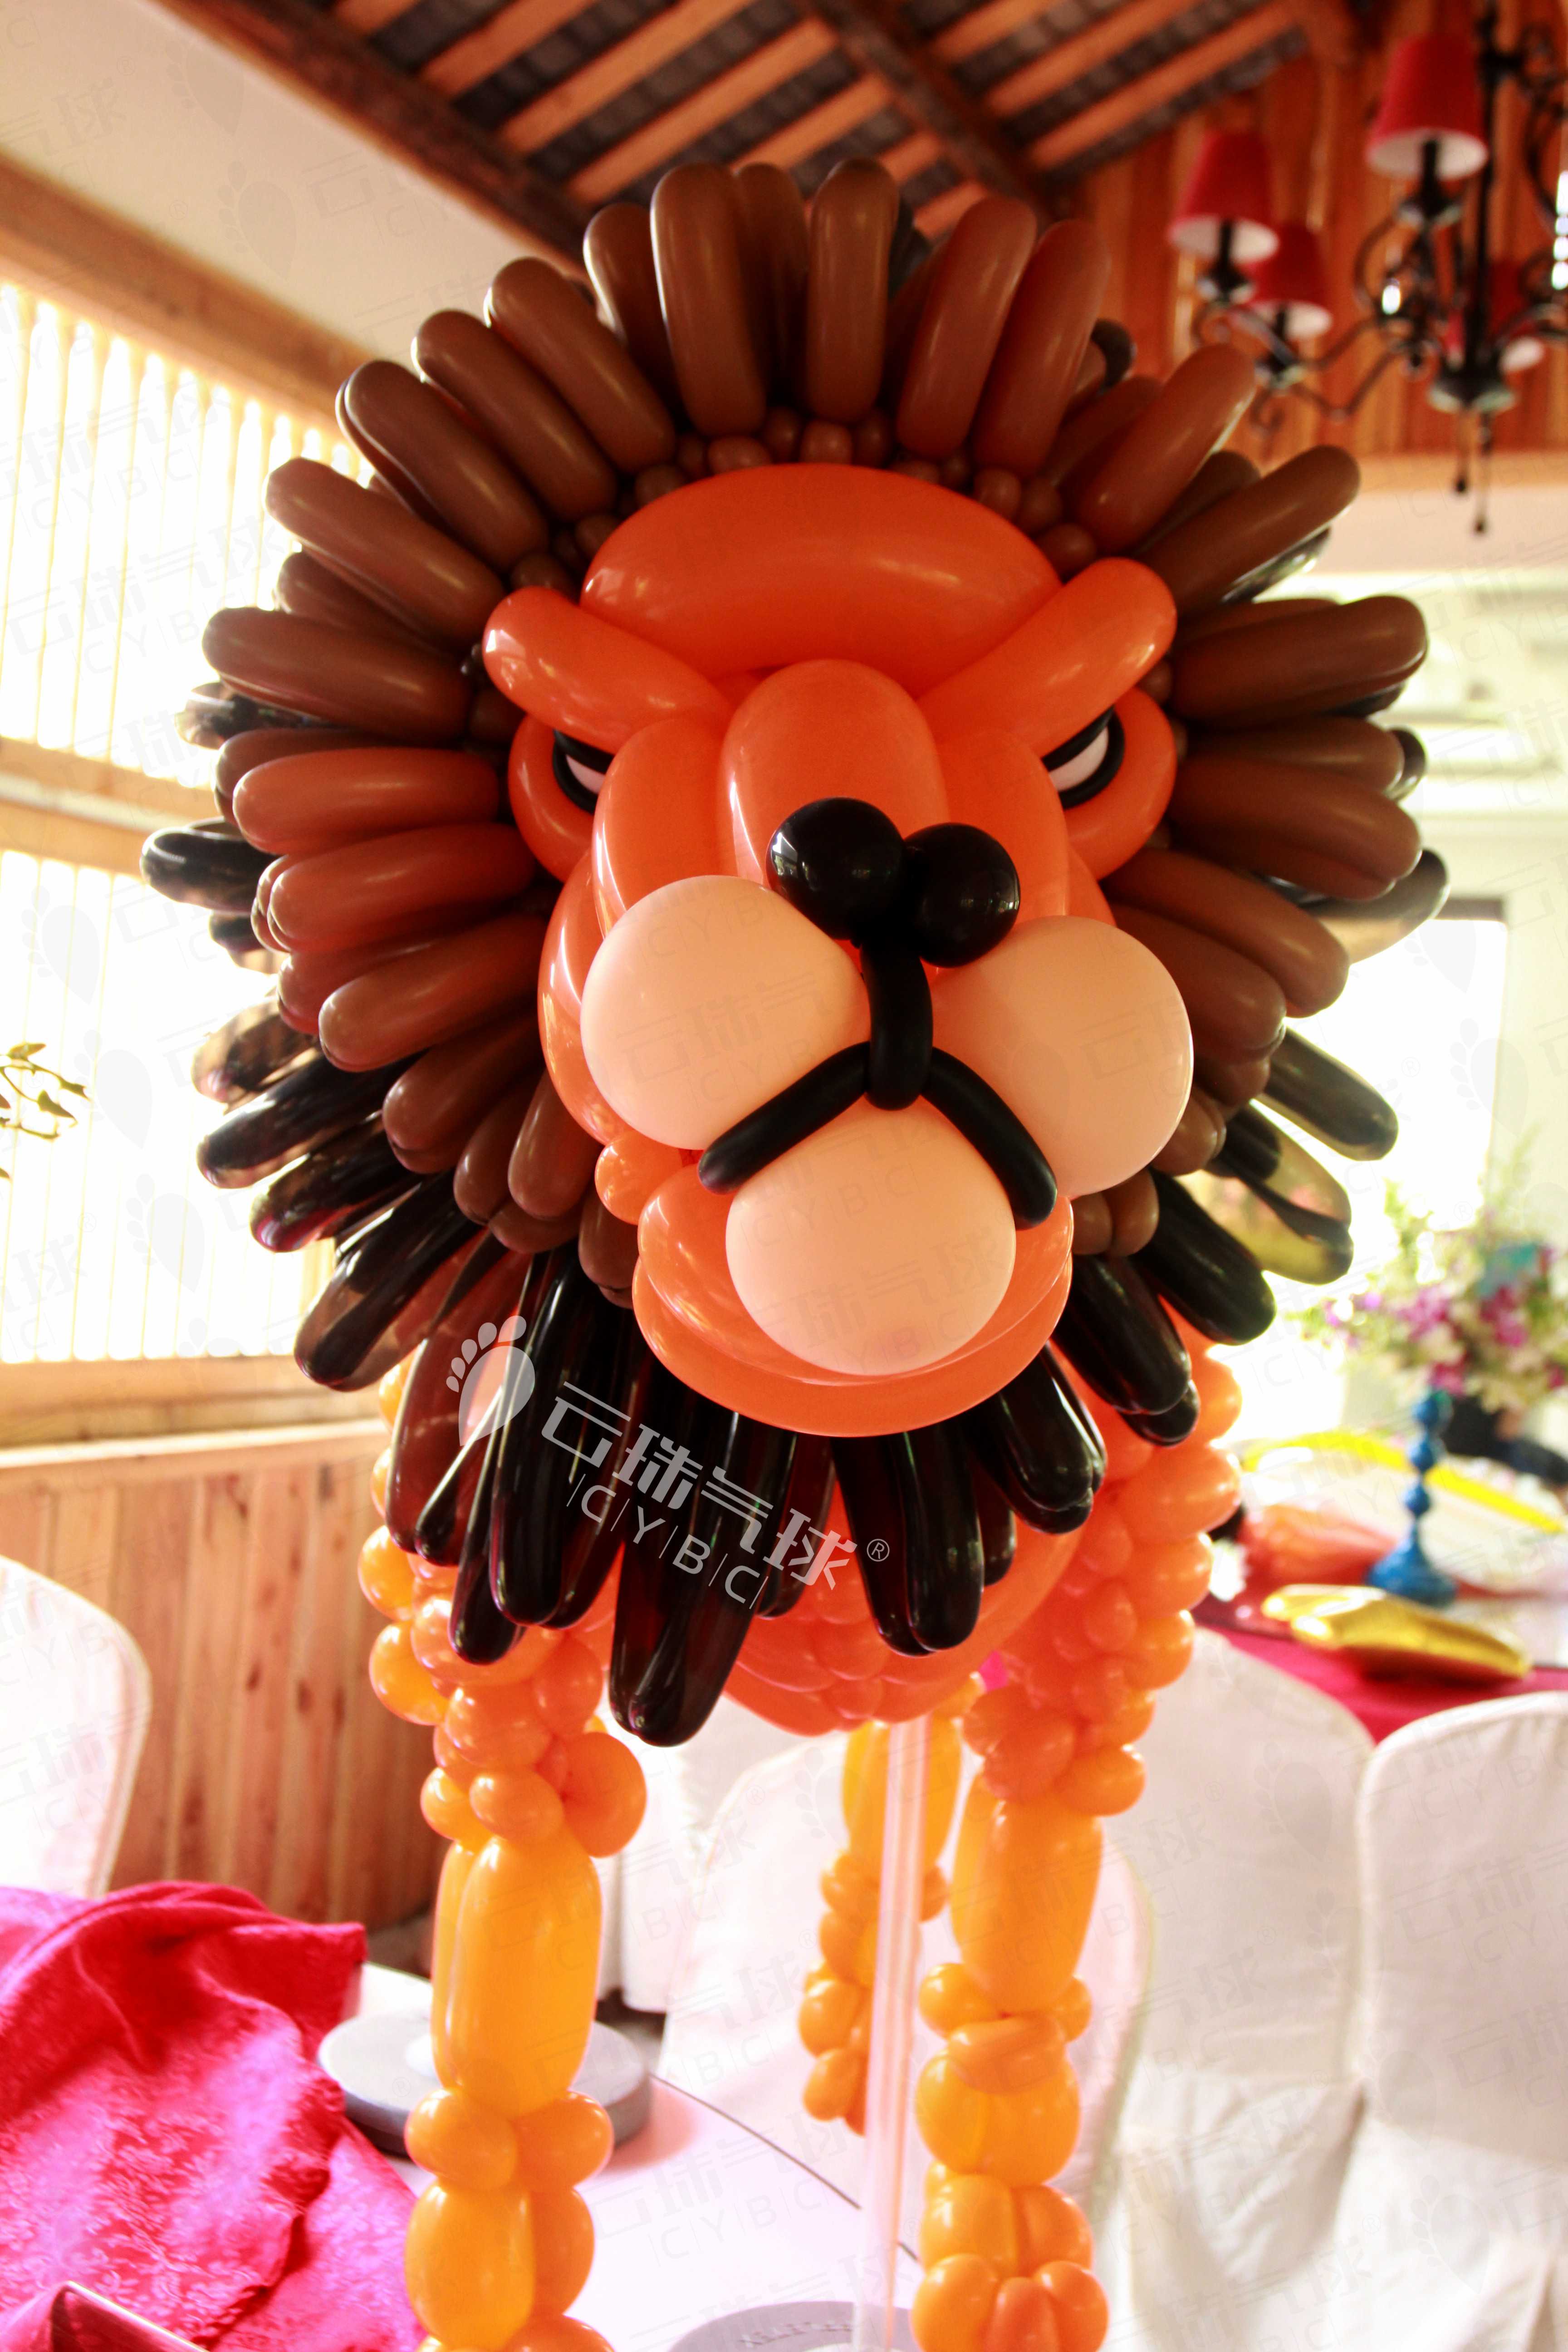 狮子气球/气球造型/成都气球狮子供应狮子气球/气球造型/成都气球狮子